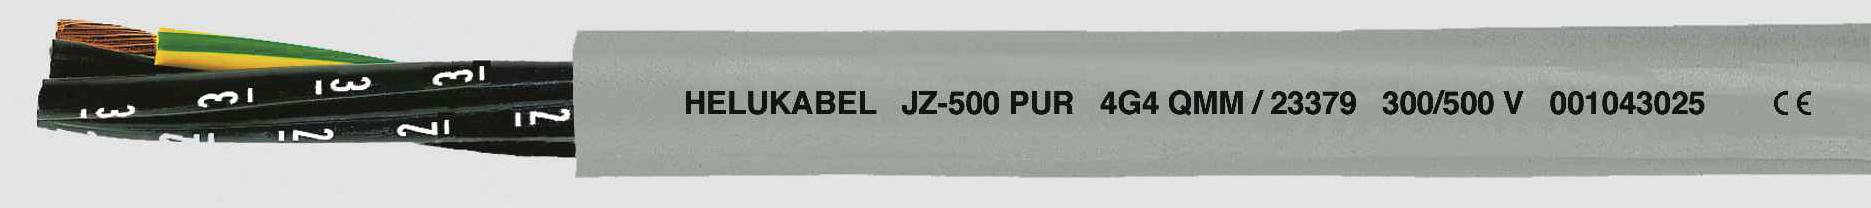 HELUKABEL JZ-500 PUR Steuerleitung 3 G 0.50 mm² Grau 23315-1000 1000 m